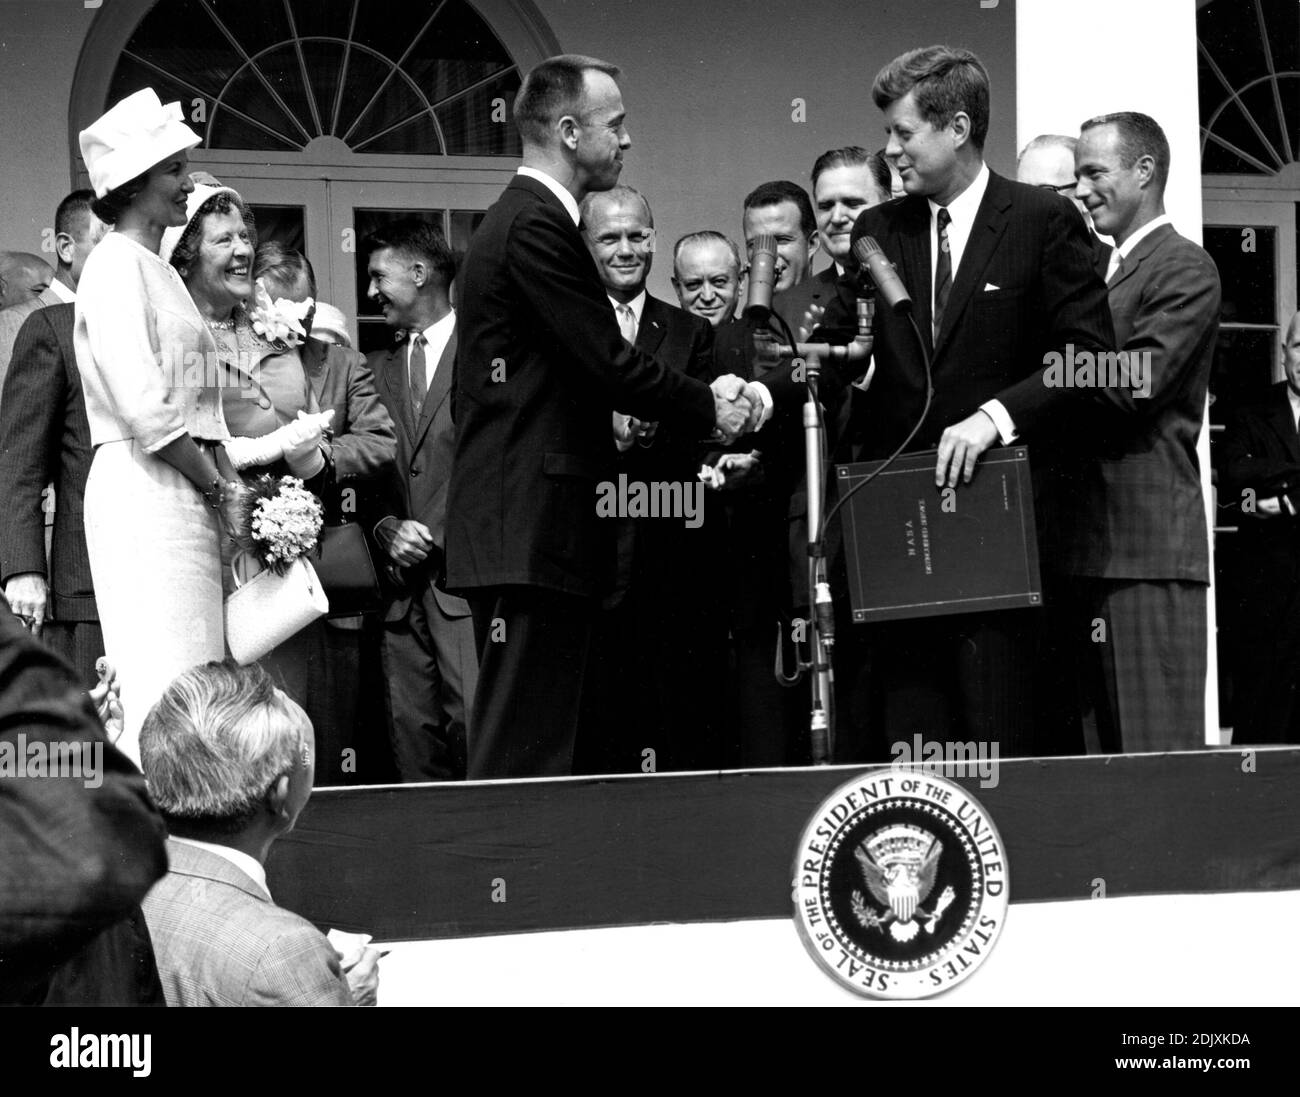 US-Präsident John F. Kennedy gratuliert dem Astronauten Alan B. Shepard, Jr., dem ersten Amerikaner im All, zu seiner historischen Fahrt am 5. Mai 1961 mit der Raumsonde Freedom 7 und überreicht ihm am 6. Mai 1961 den Distinguished Service Award der National Aeronautics and Space Administration (NASA) in Washington, D.C.. Shepard's Frau, Louise (links in weißem Kleid und Hut), und seine Mutter waren anwesend, sowie die anderen sechs Merkur-Astronauten, einschließlich Colonel John H. Glenn, Jr. und andere NASA-Officals, einige im Hintergrund sichtbar. Foto der NASA via CNP/ABACAPRESS.COM Stockfoto